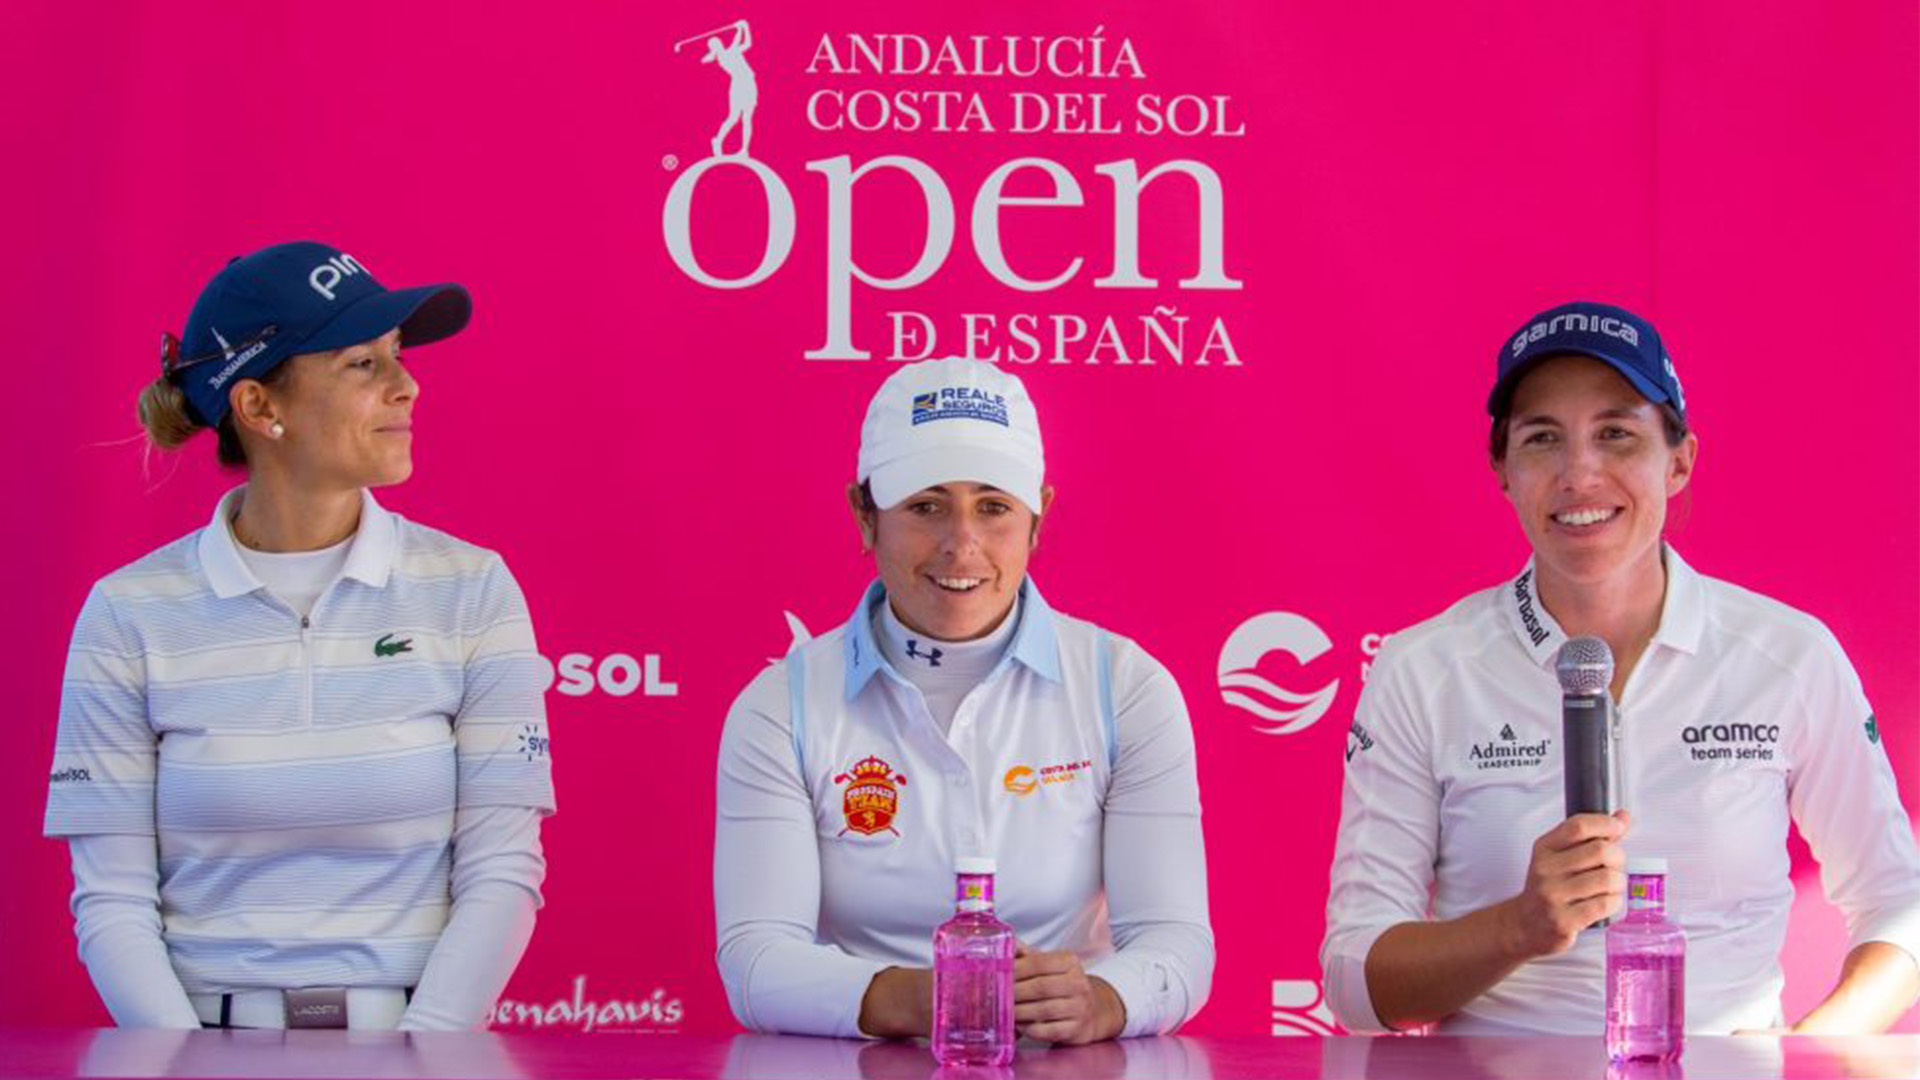 La sampedreña Azahara Muñoz vuelve al Andalucía Costa del Sol Open de España